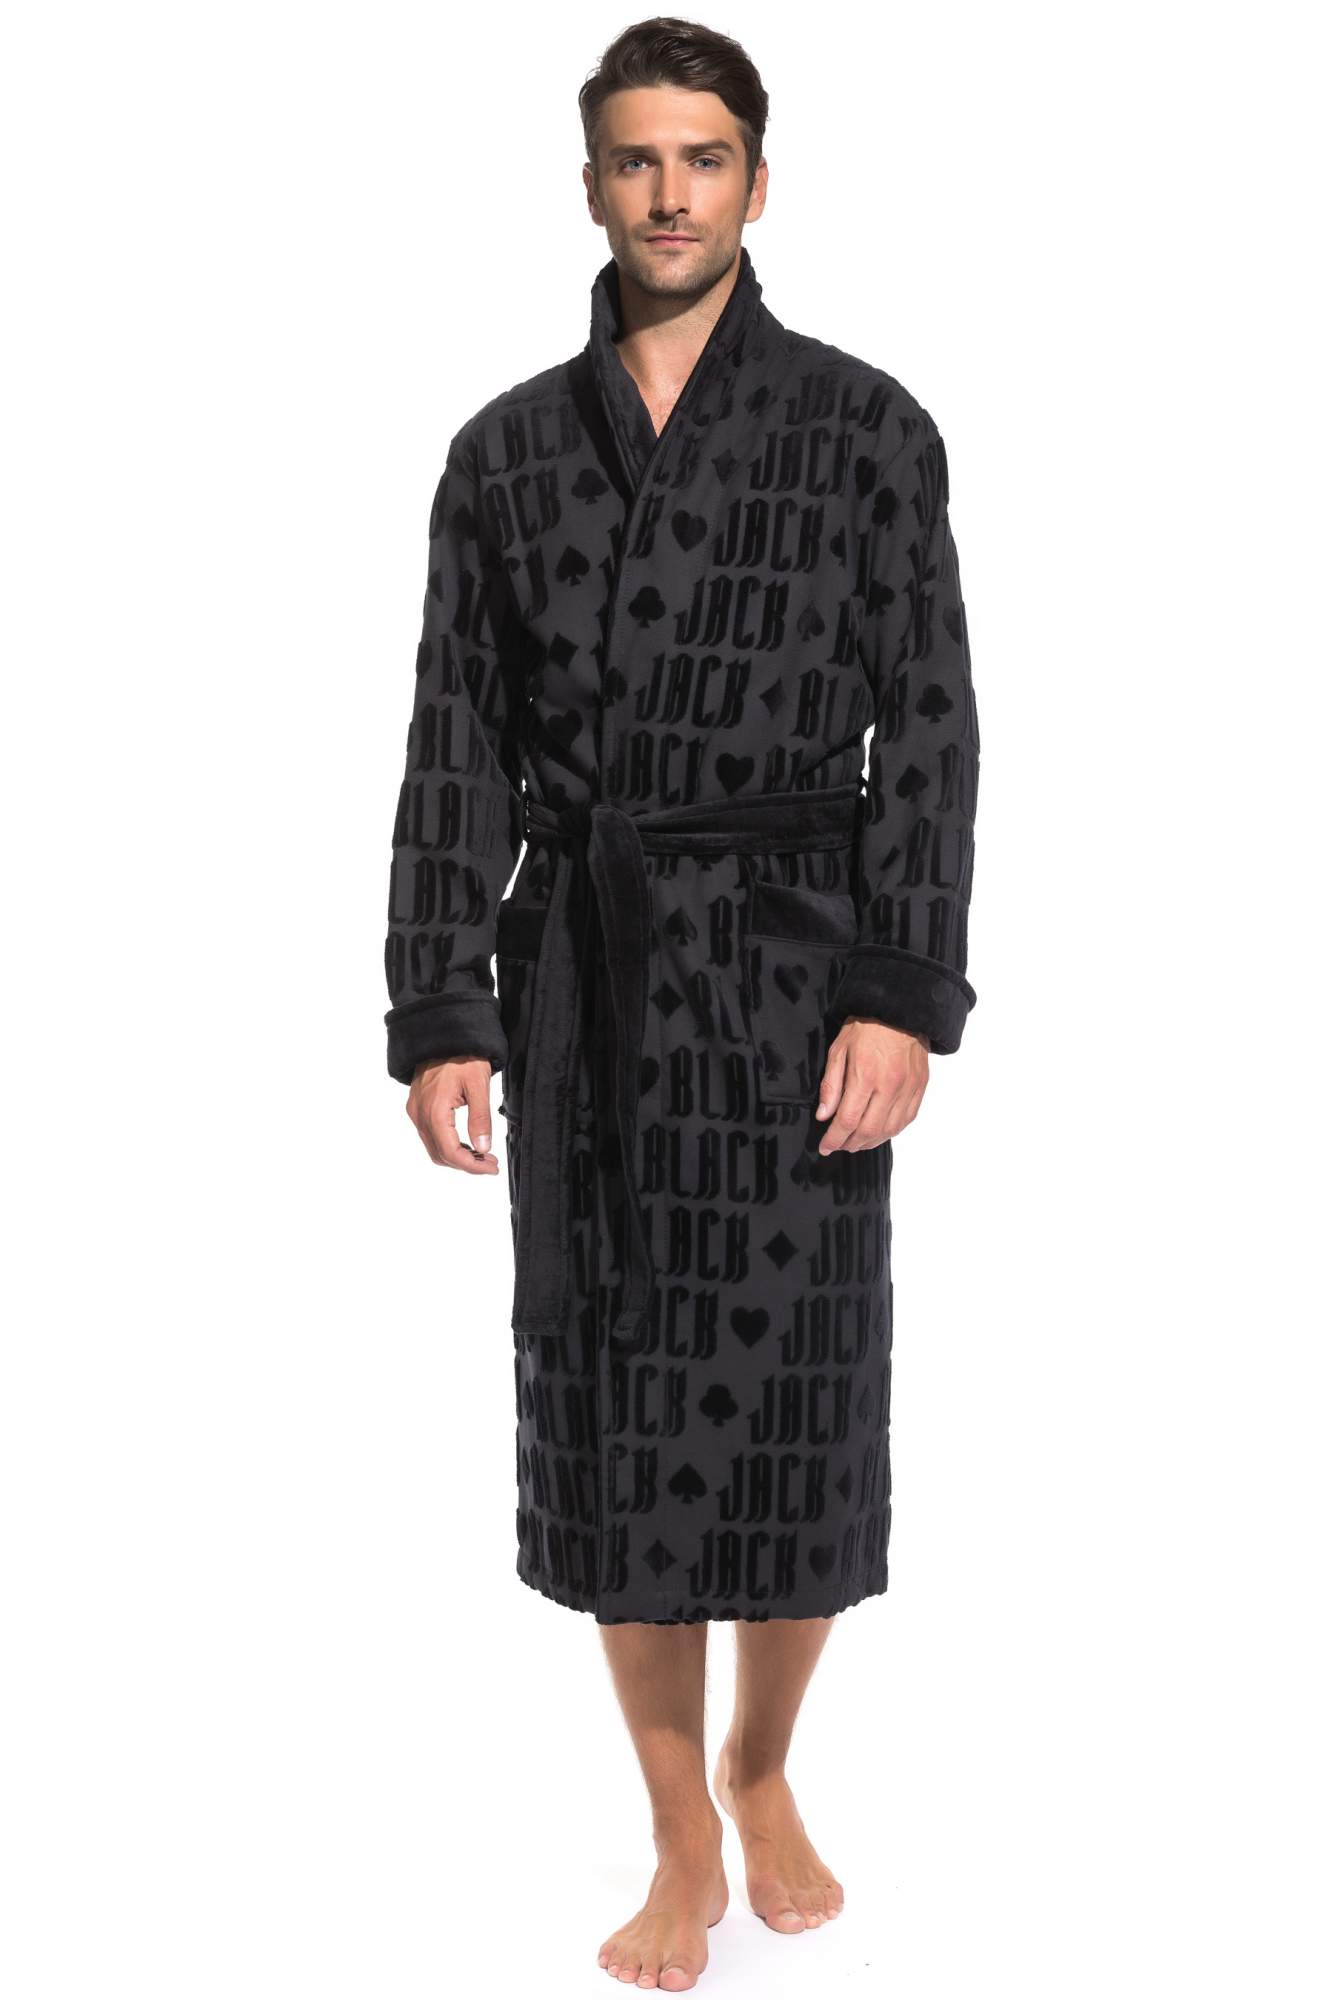 Стильный махровый халат Black Jack (PM France 937), цвет черный, размер XL (50-52)